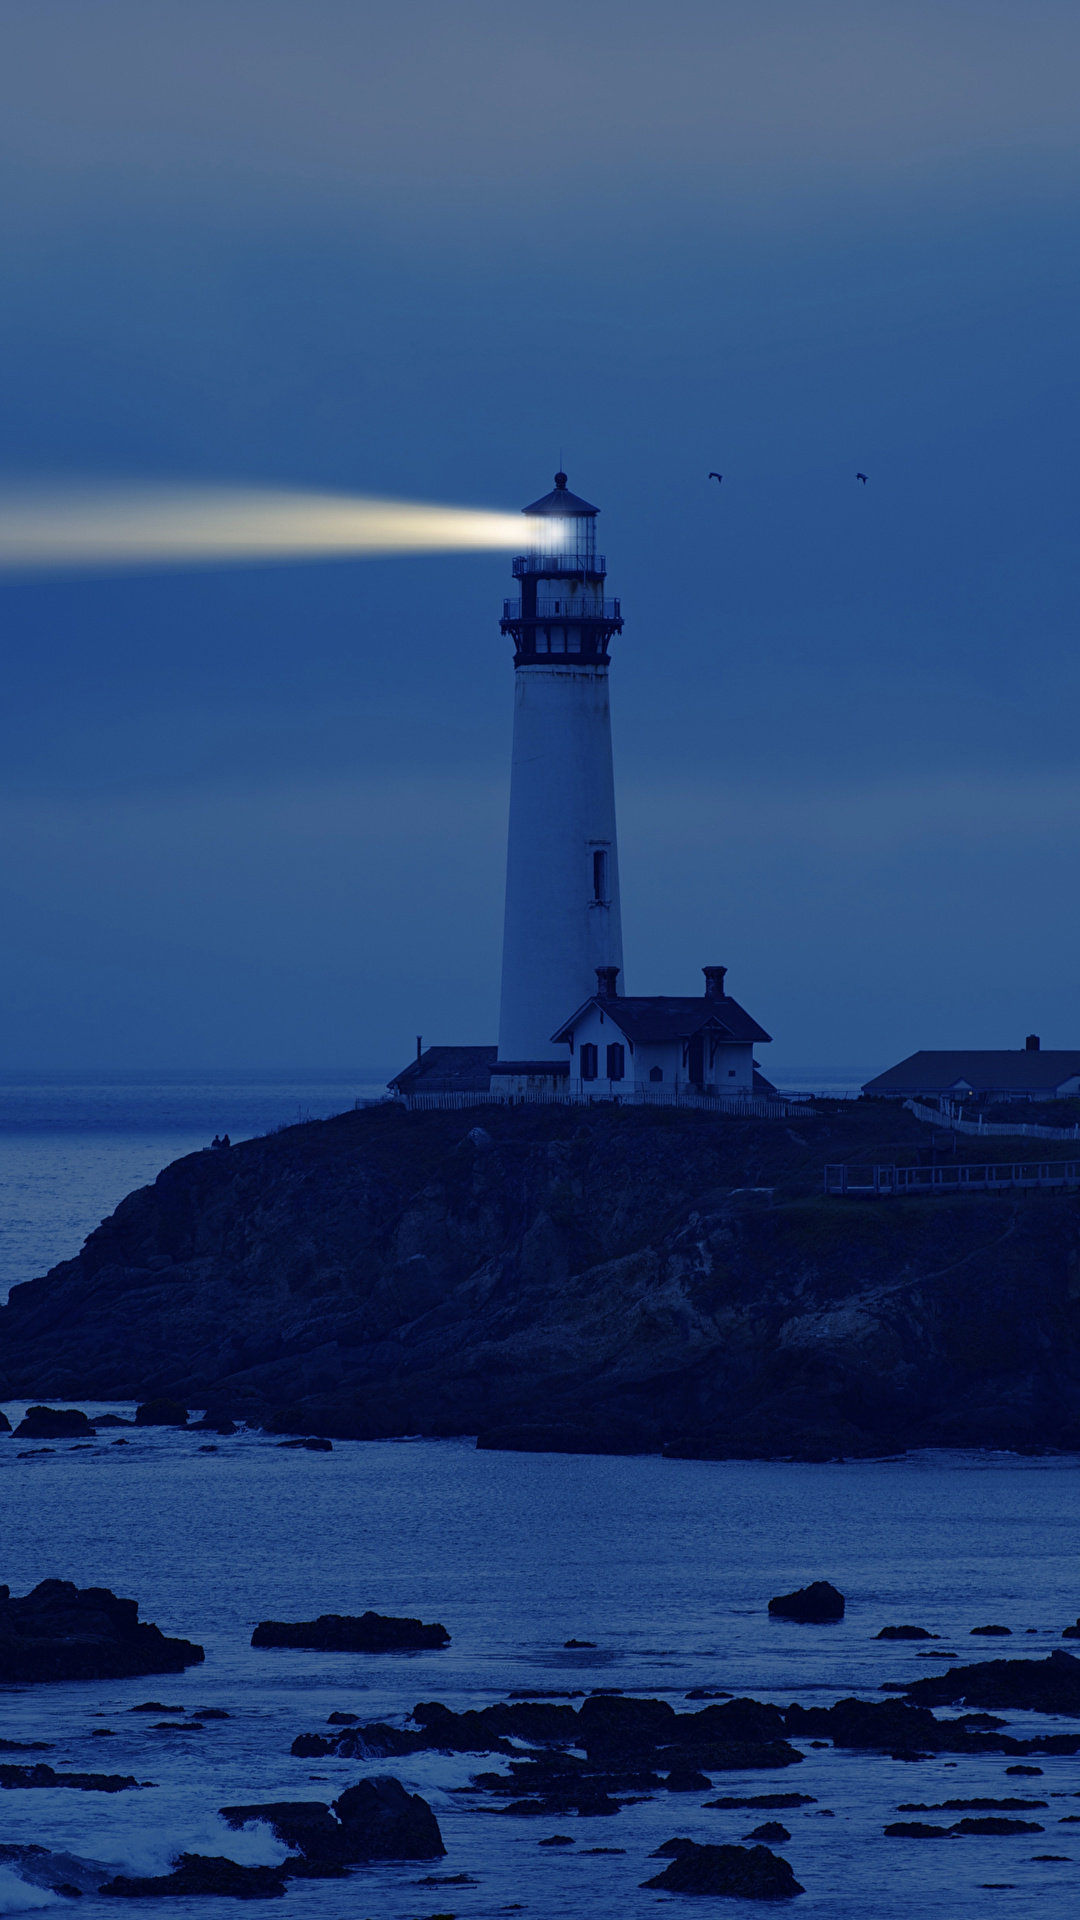 壁紙 1080x19 アメリカ合衆国 海岸 灯台 カリフォルニア州 夜 自然 ダウンロード 写真